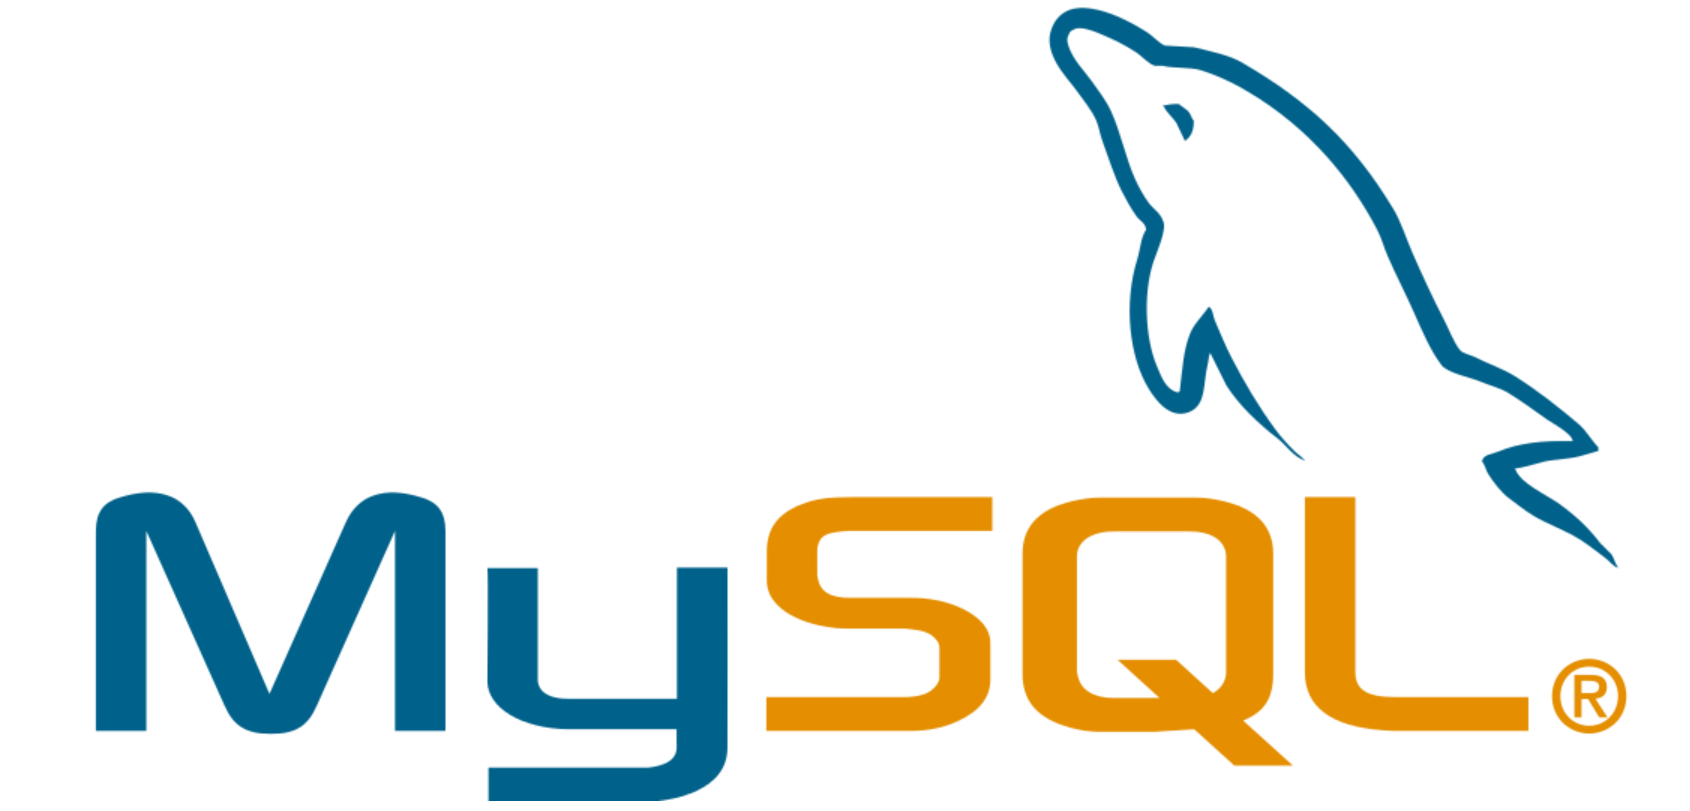  如何解决MySQL主从复制太慢的问题